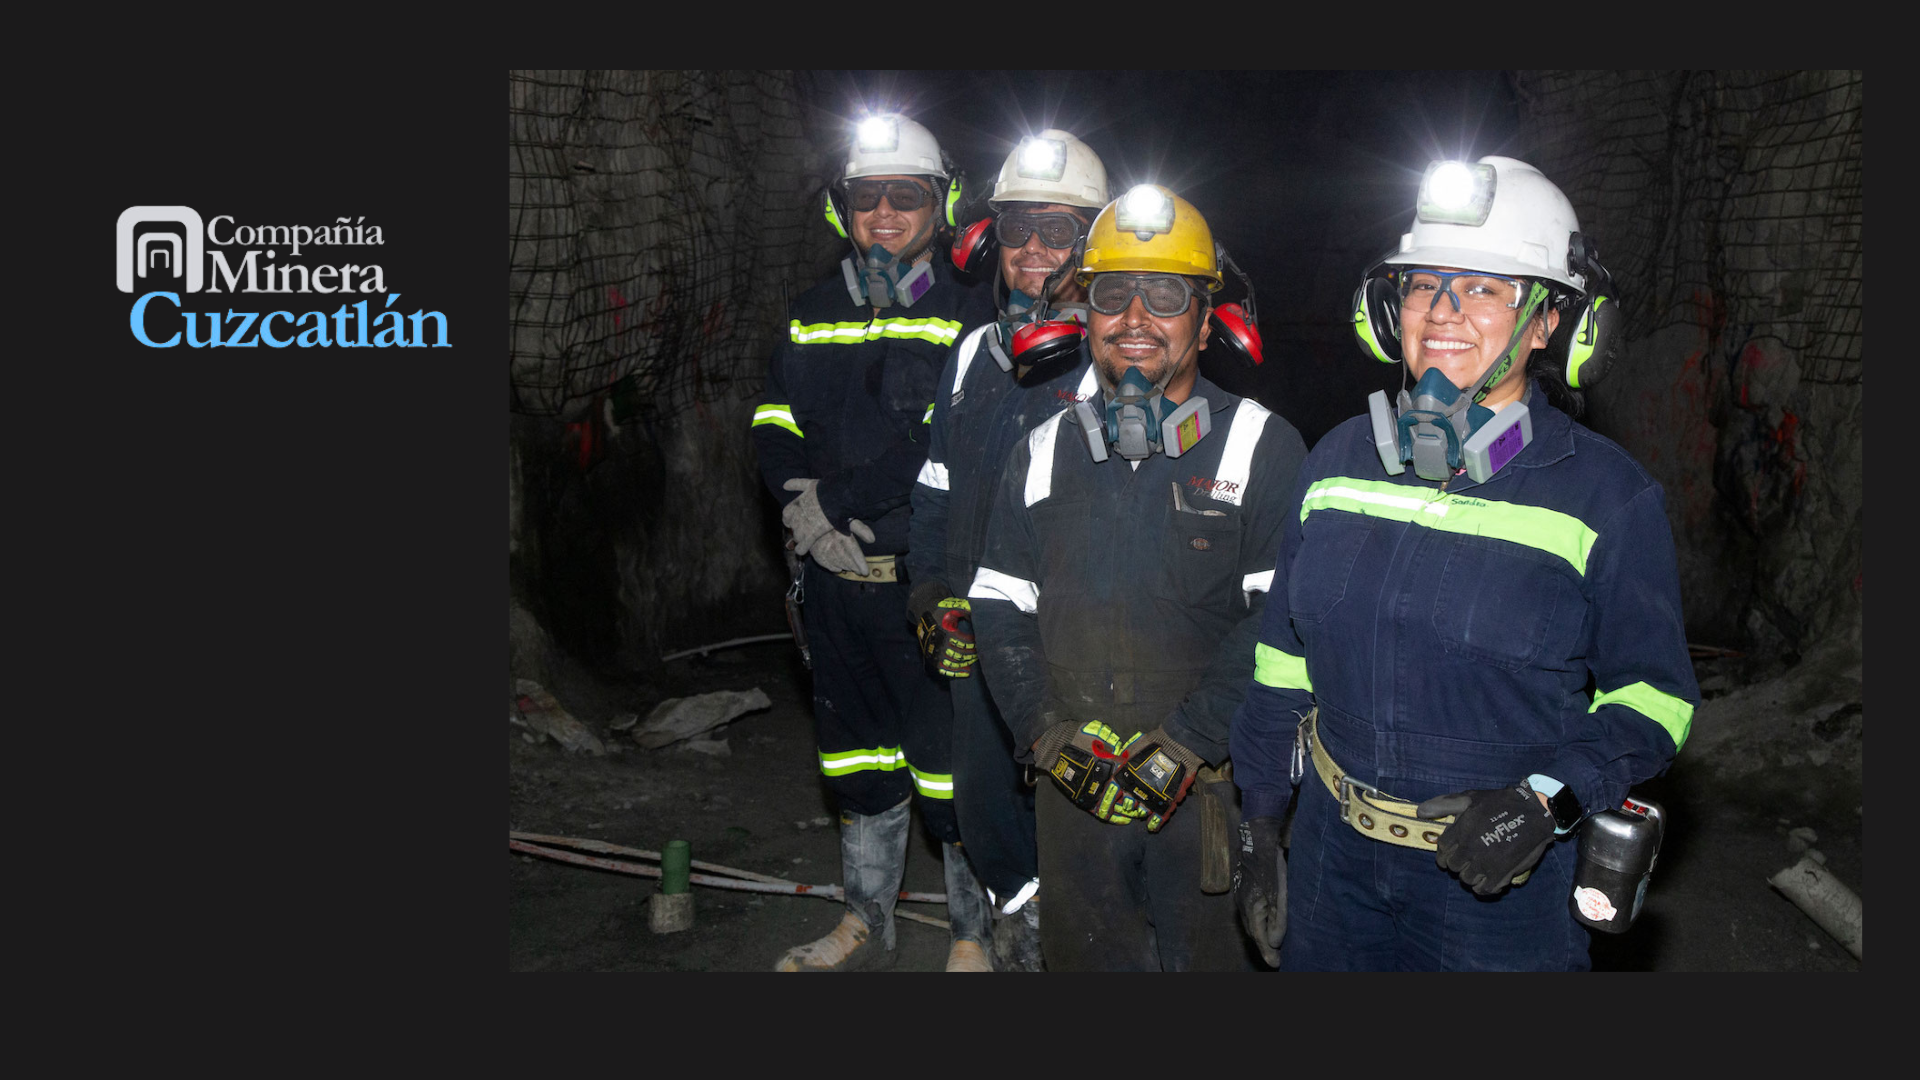 Anuncia Minera Cuzcatlán nueva página web y da breve informe de actividades